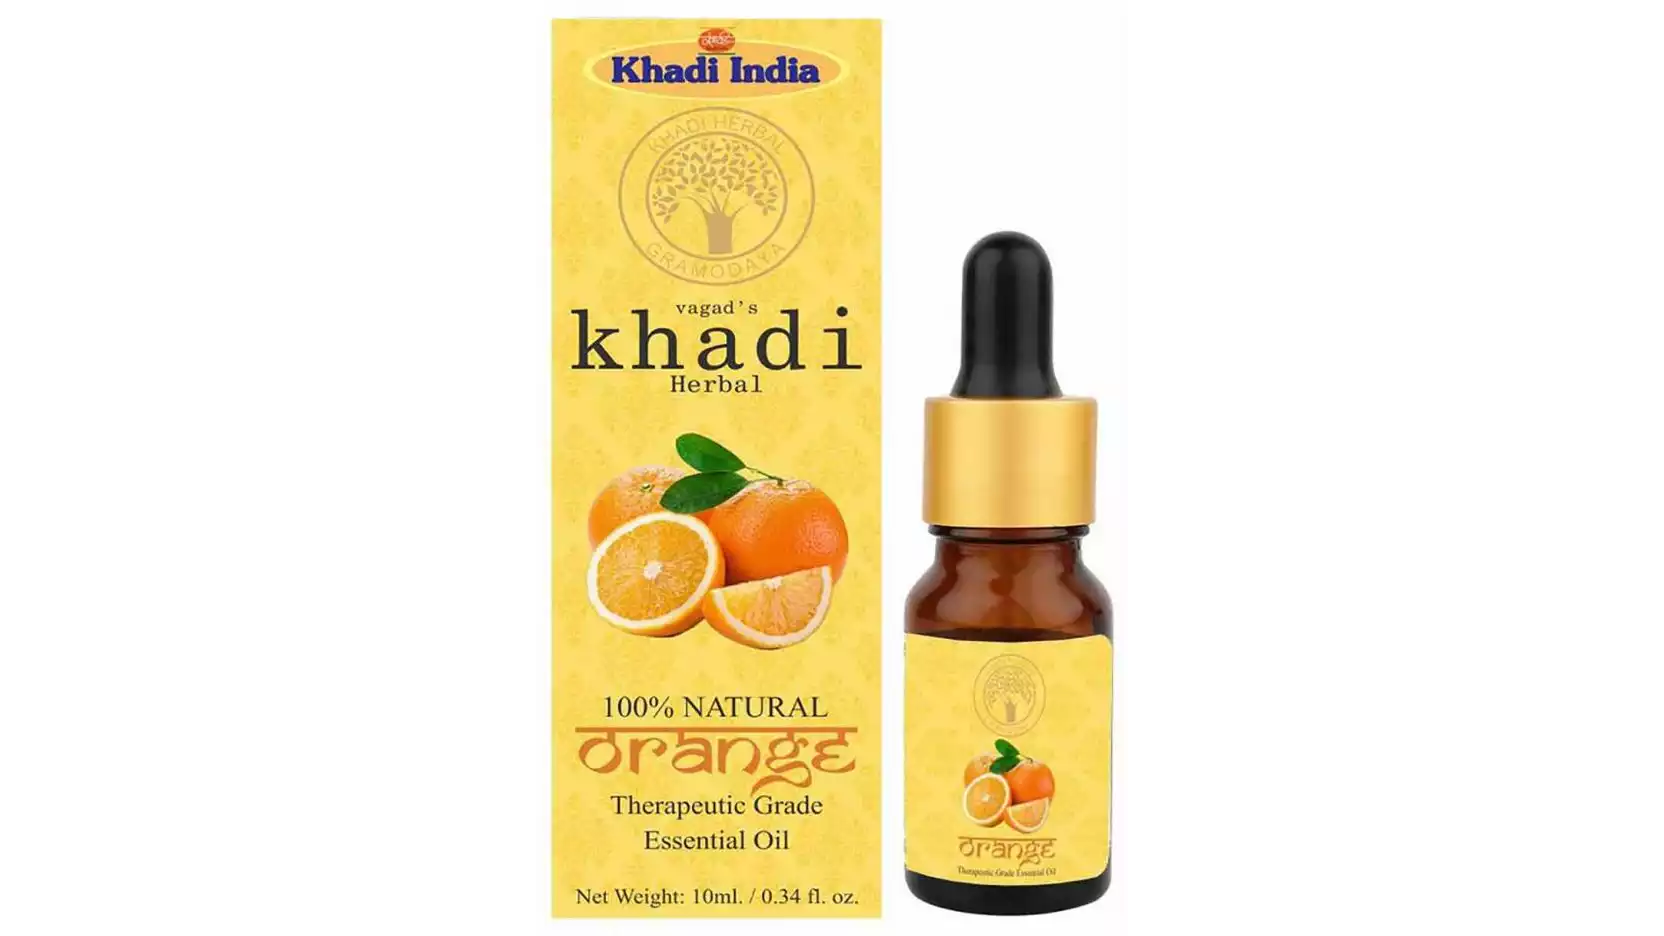 Vagads Khadi Orange Essential Oil (10ml)